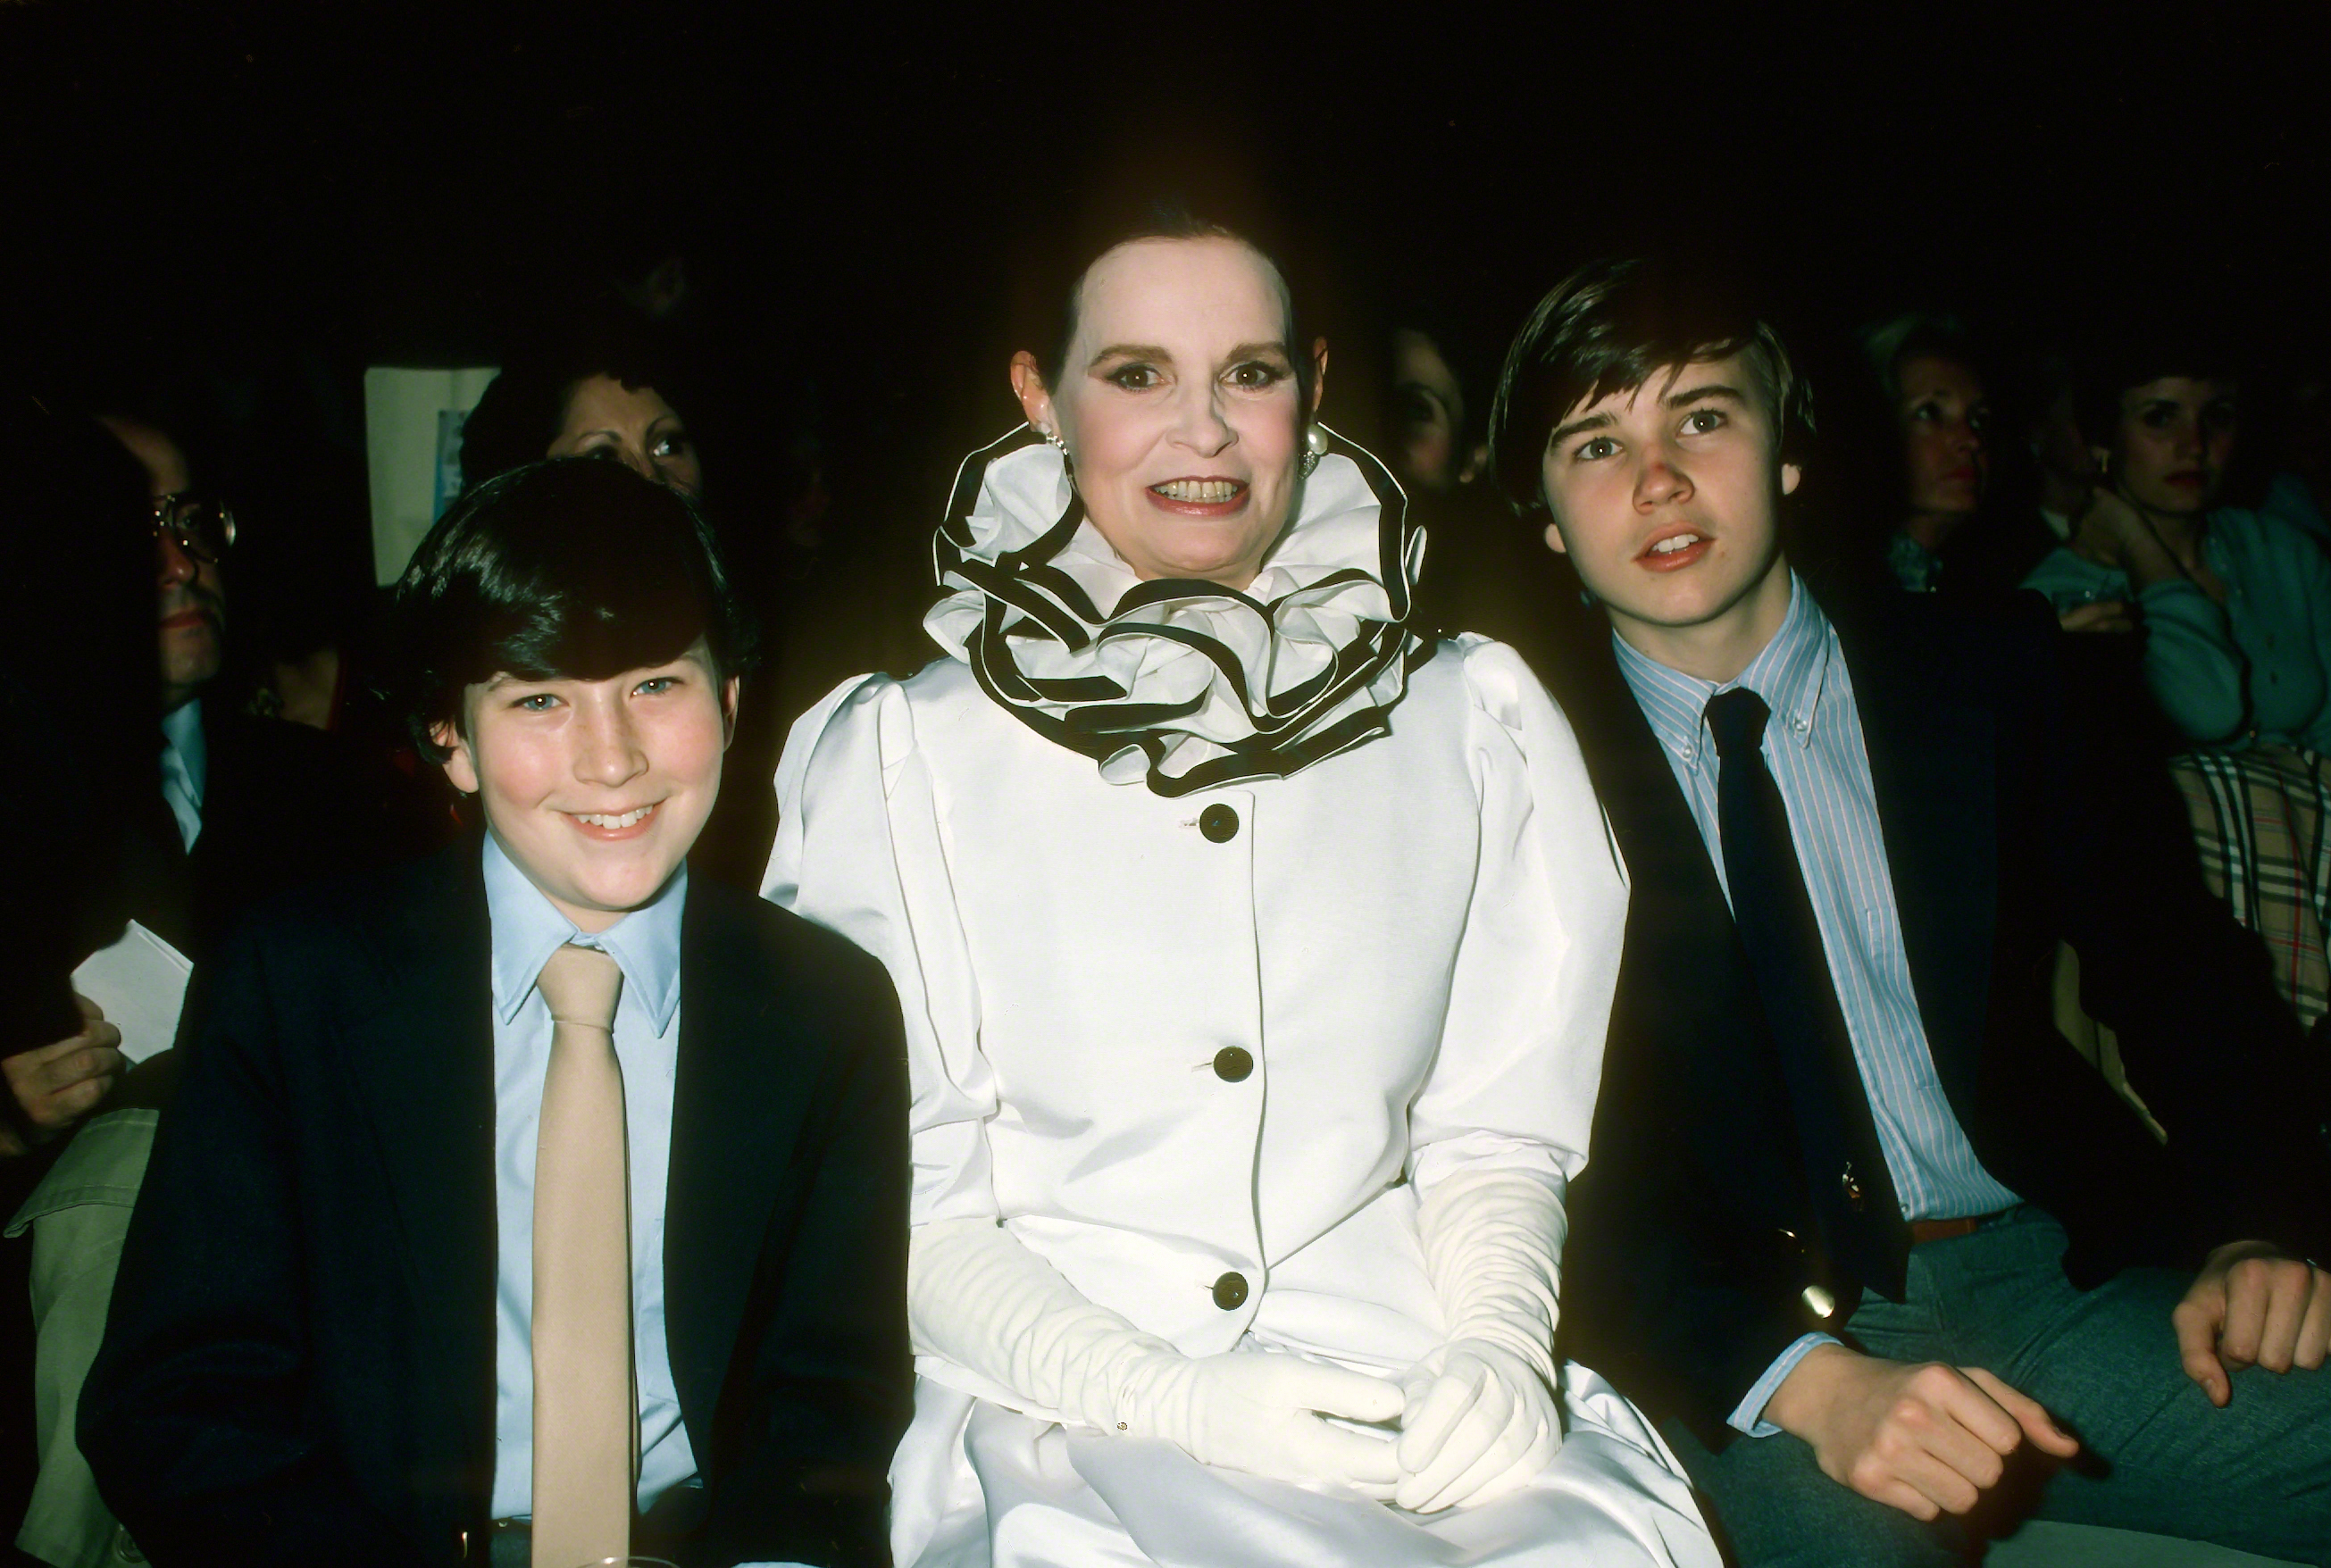 Anderson Cooper, Gloria Vanderbilt, and Carter Cooper in New York City in 1980 | Source: Getty Images